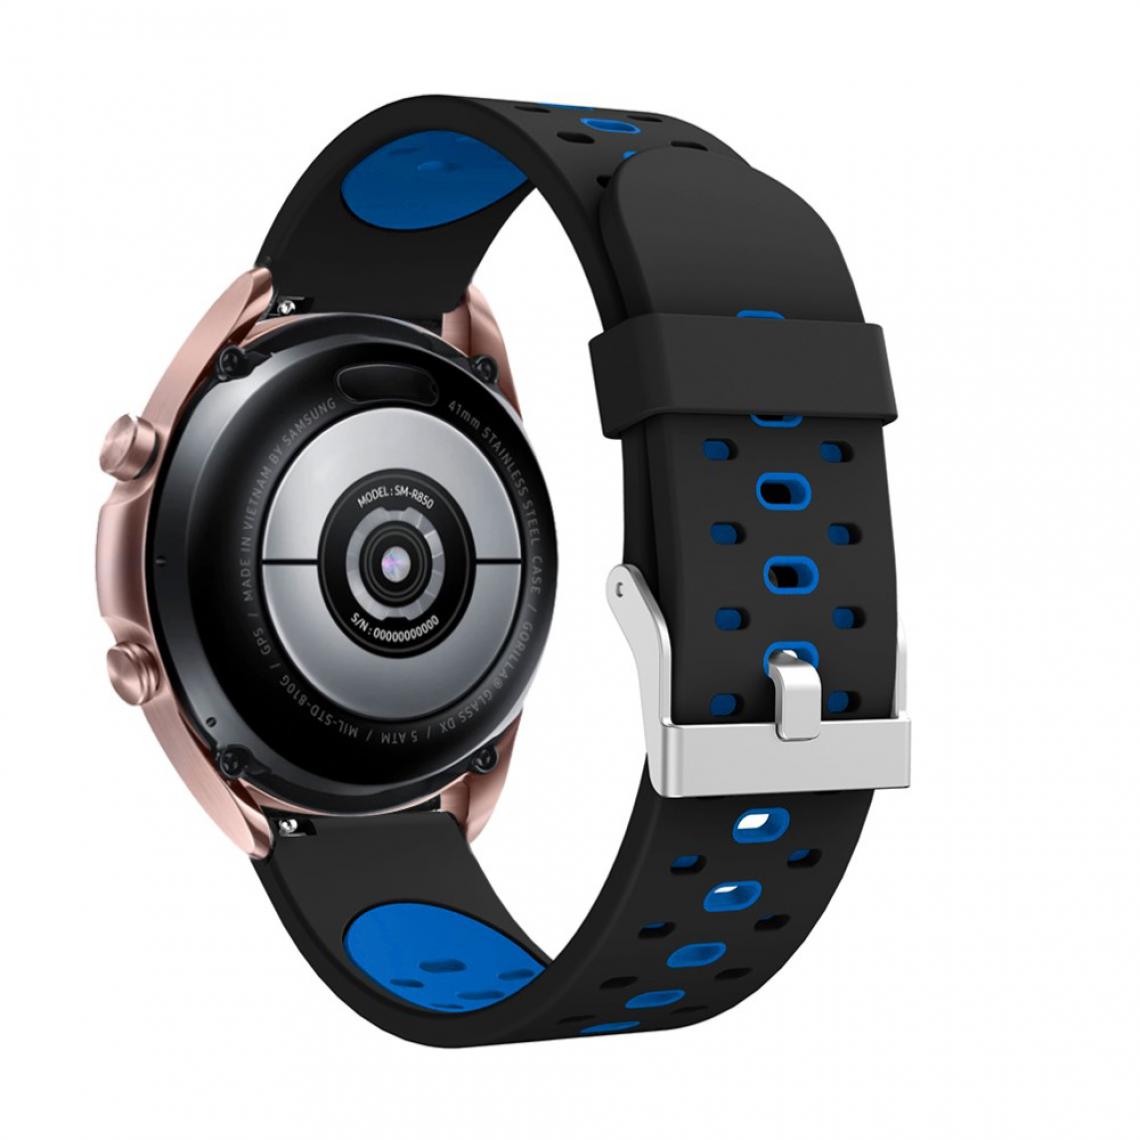 Other - Bracelet en silicone 20 mm bicolore noir/bleu pour votre Samsung Galaxy Watch3 41mm - Accessoires bracelet connecté